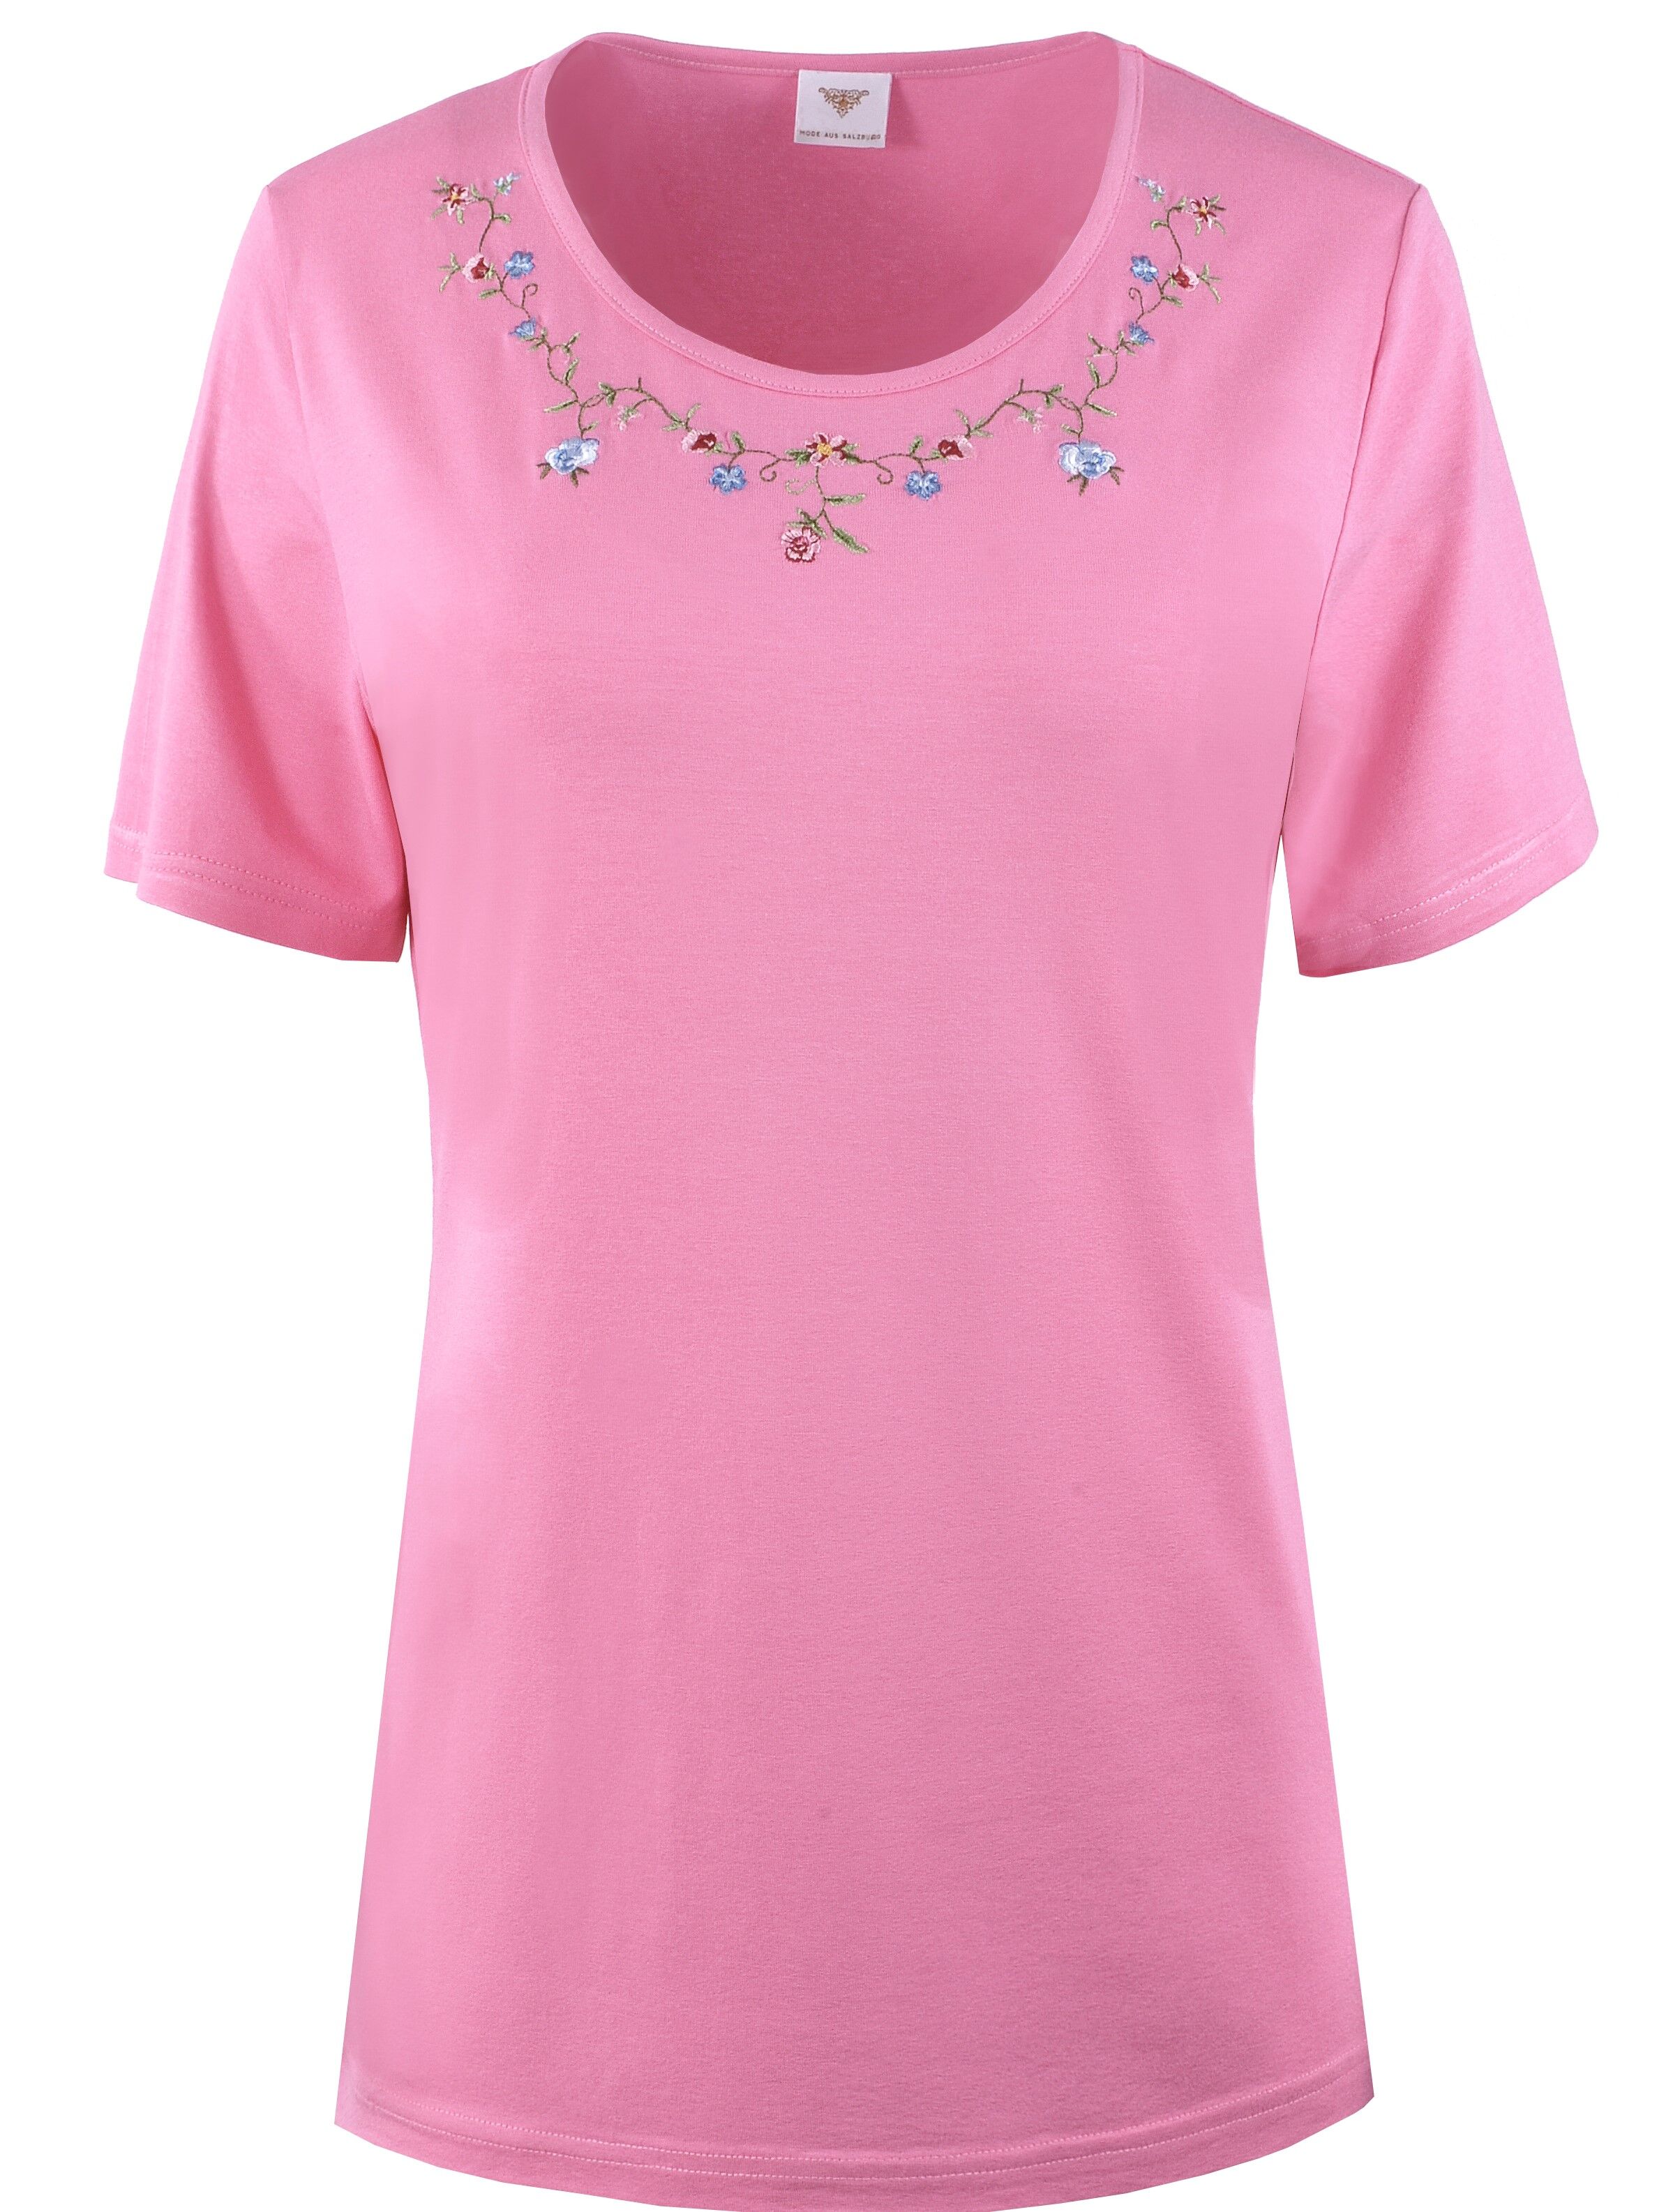 PREMIUM Trachtenshirt Damen T-Shirt lang Blumen-Stickerei Pink